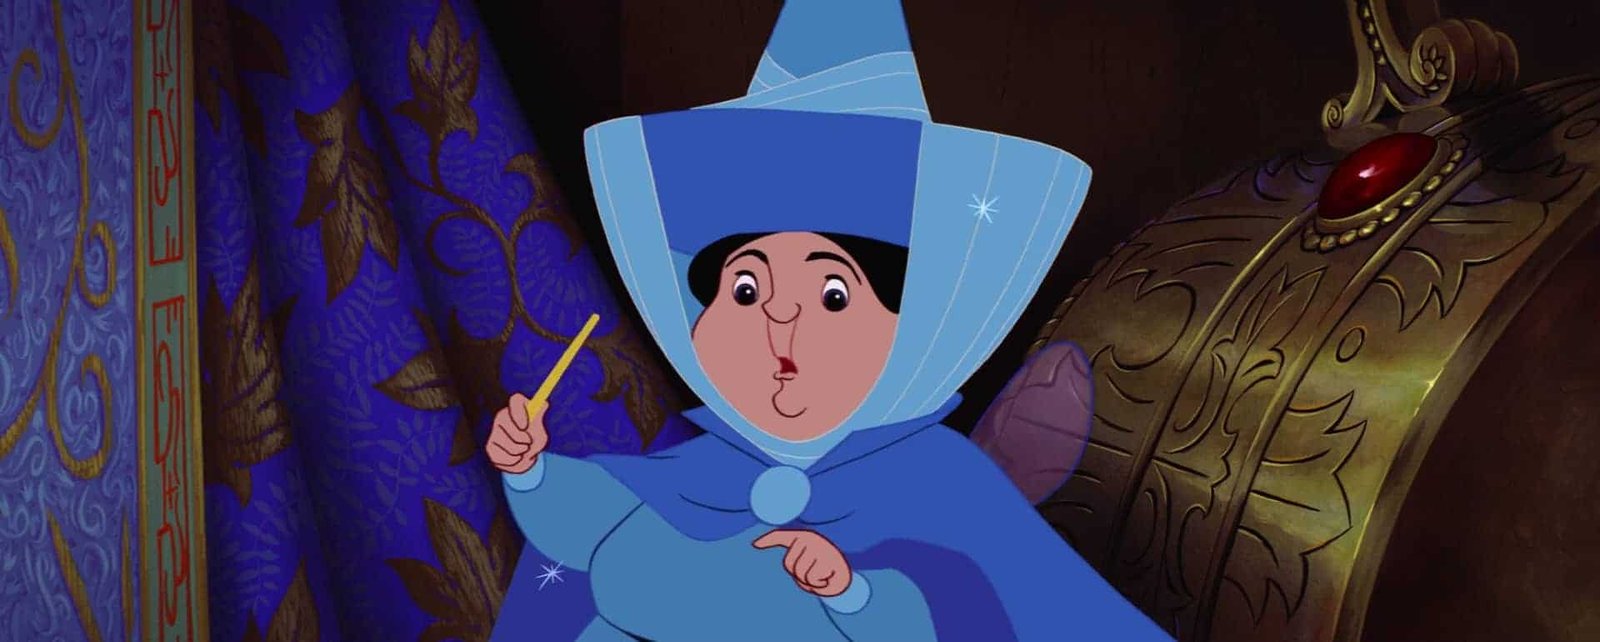 Une image animée d'une fée marraine Disney surprise, vêtue d'une robe bleue et d'un chapeau, tenant une baguette magique, regardant derrière un rideau violet.